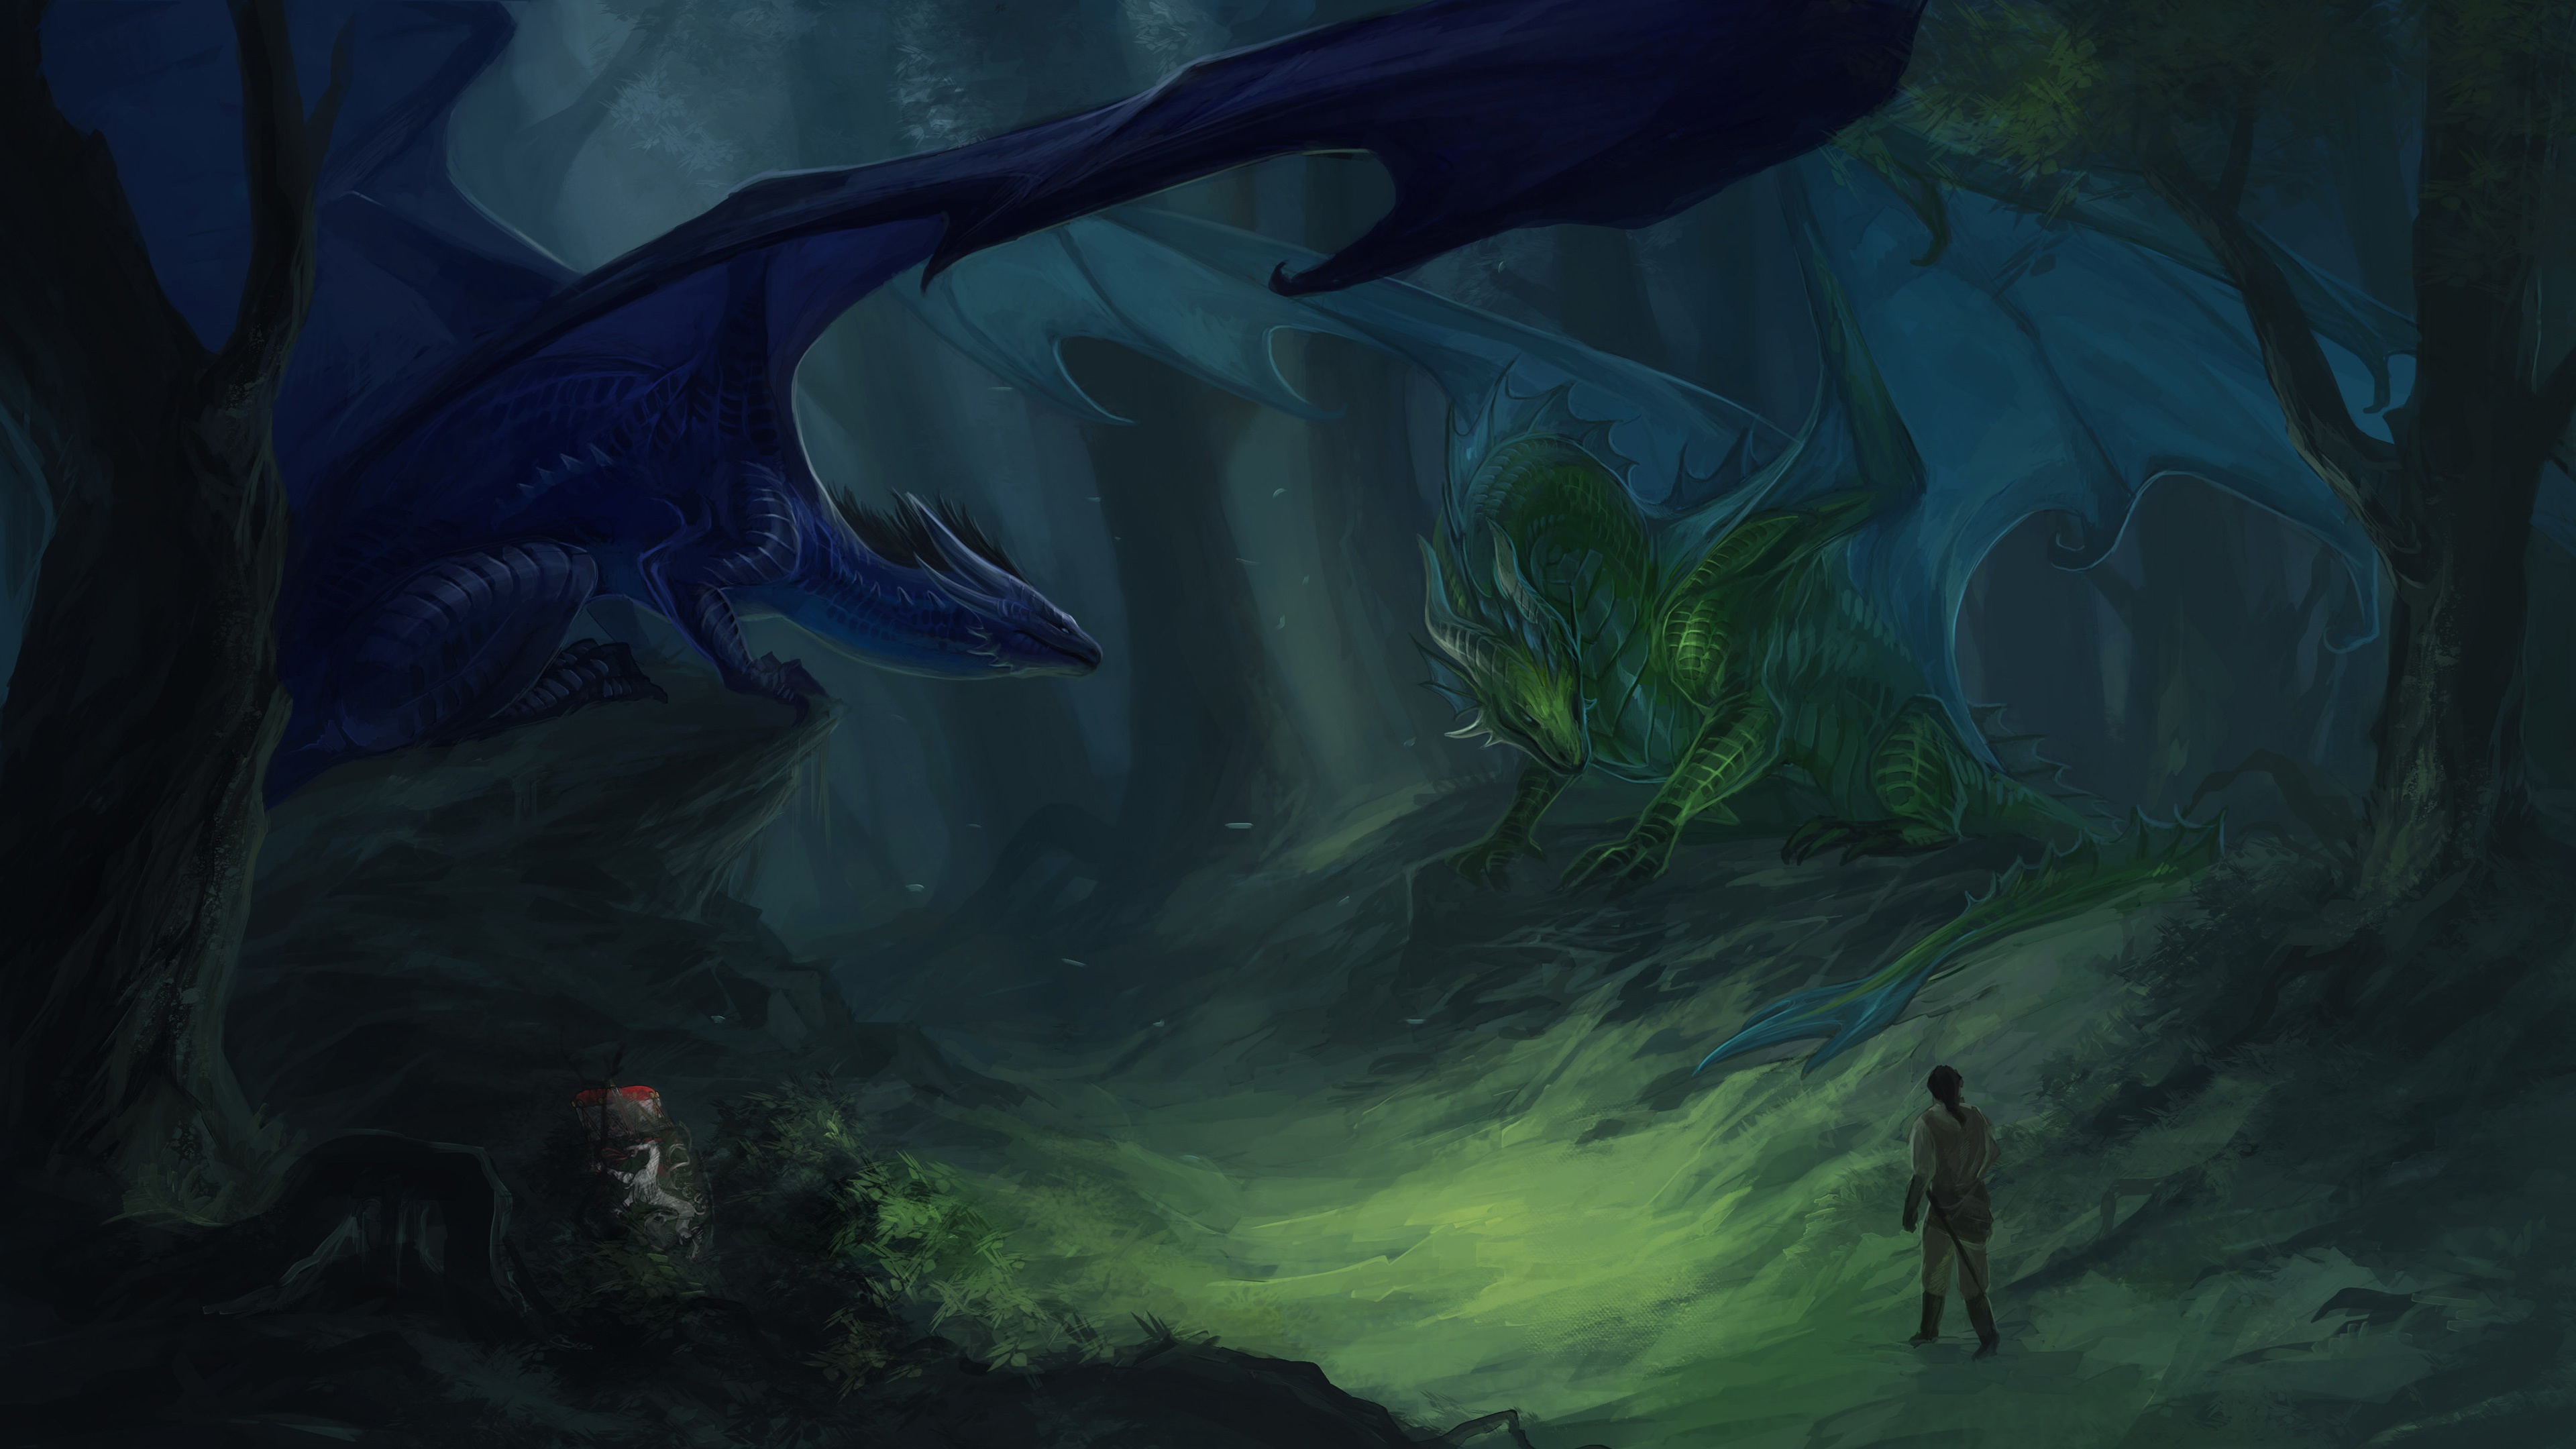 Dragon in Scary Dark Forest 4k Ultra HD Wallpaper